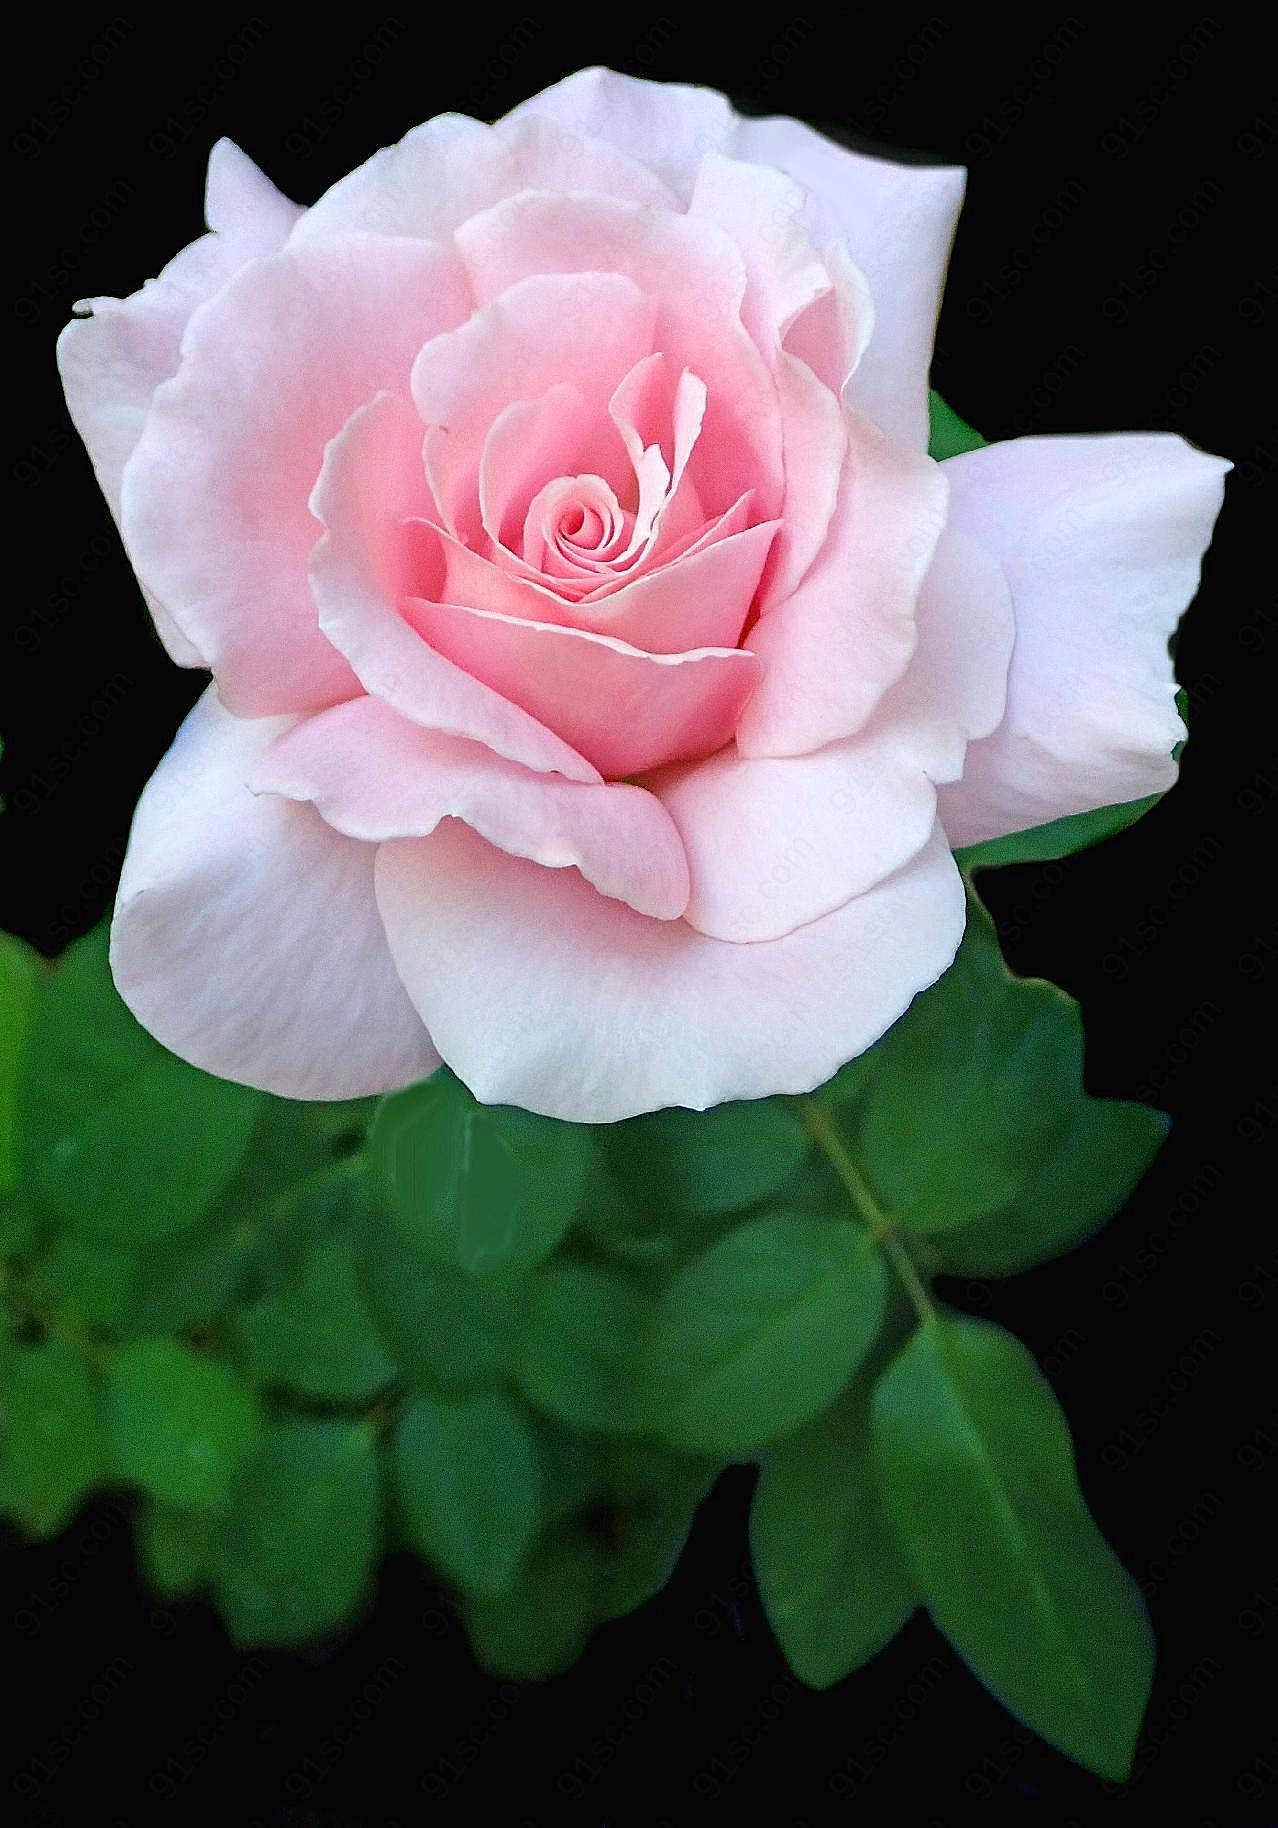 一朵漂亮玫瑰图片高清摄影